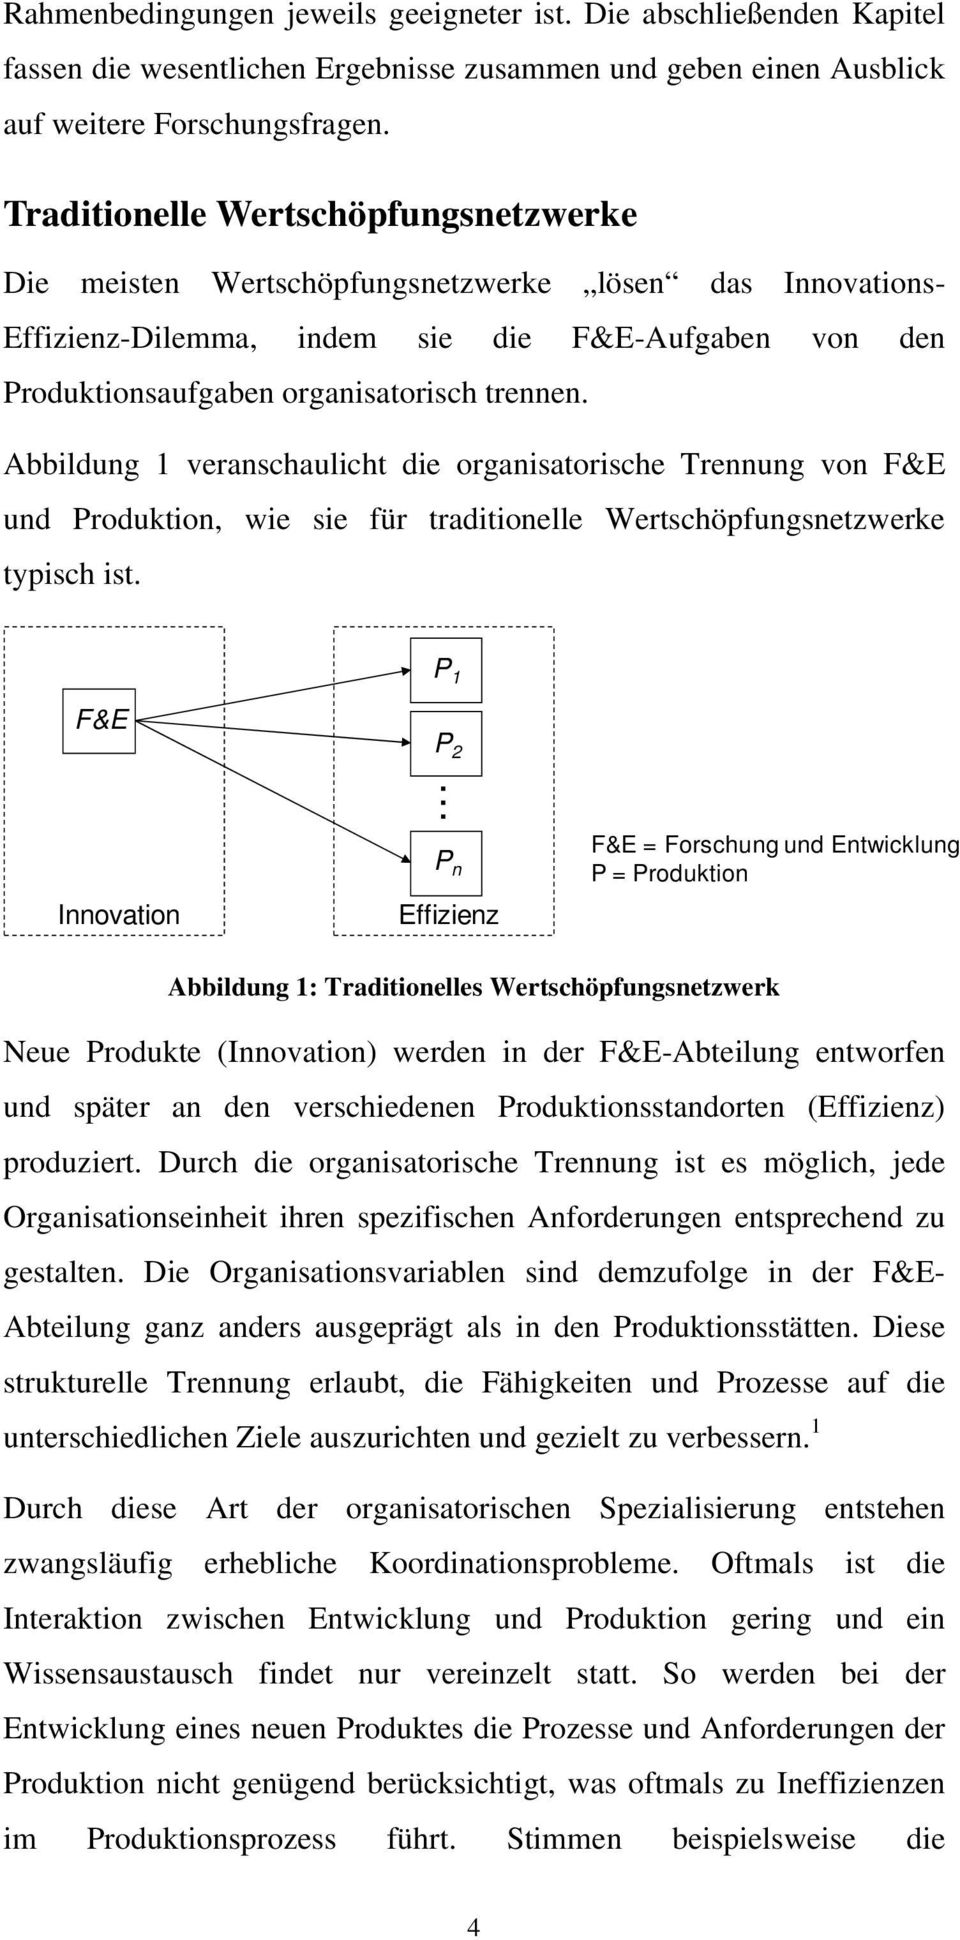 Abbildung 1 veranschaulicht die organisatorische Trennung von F&E und Produktion, wie sie für traditionelle Wertschöpfungsnetzwerke typisch ist.